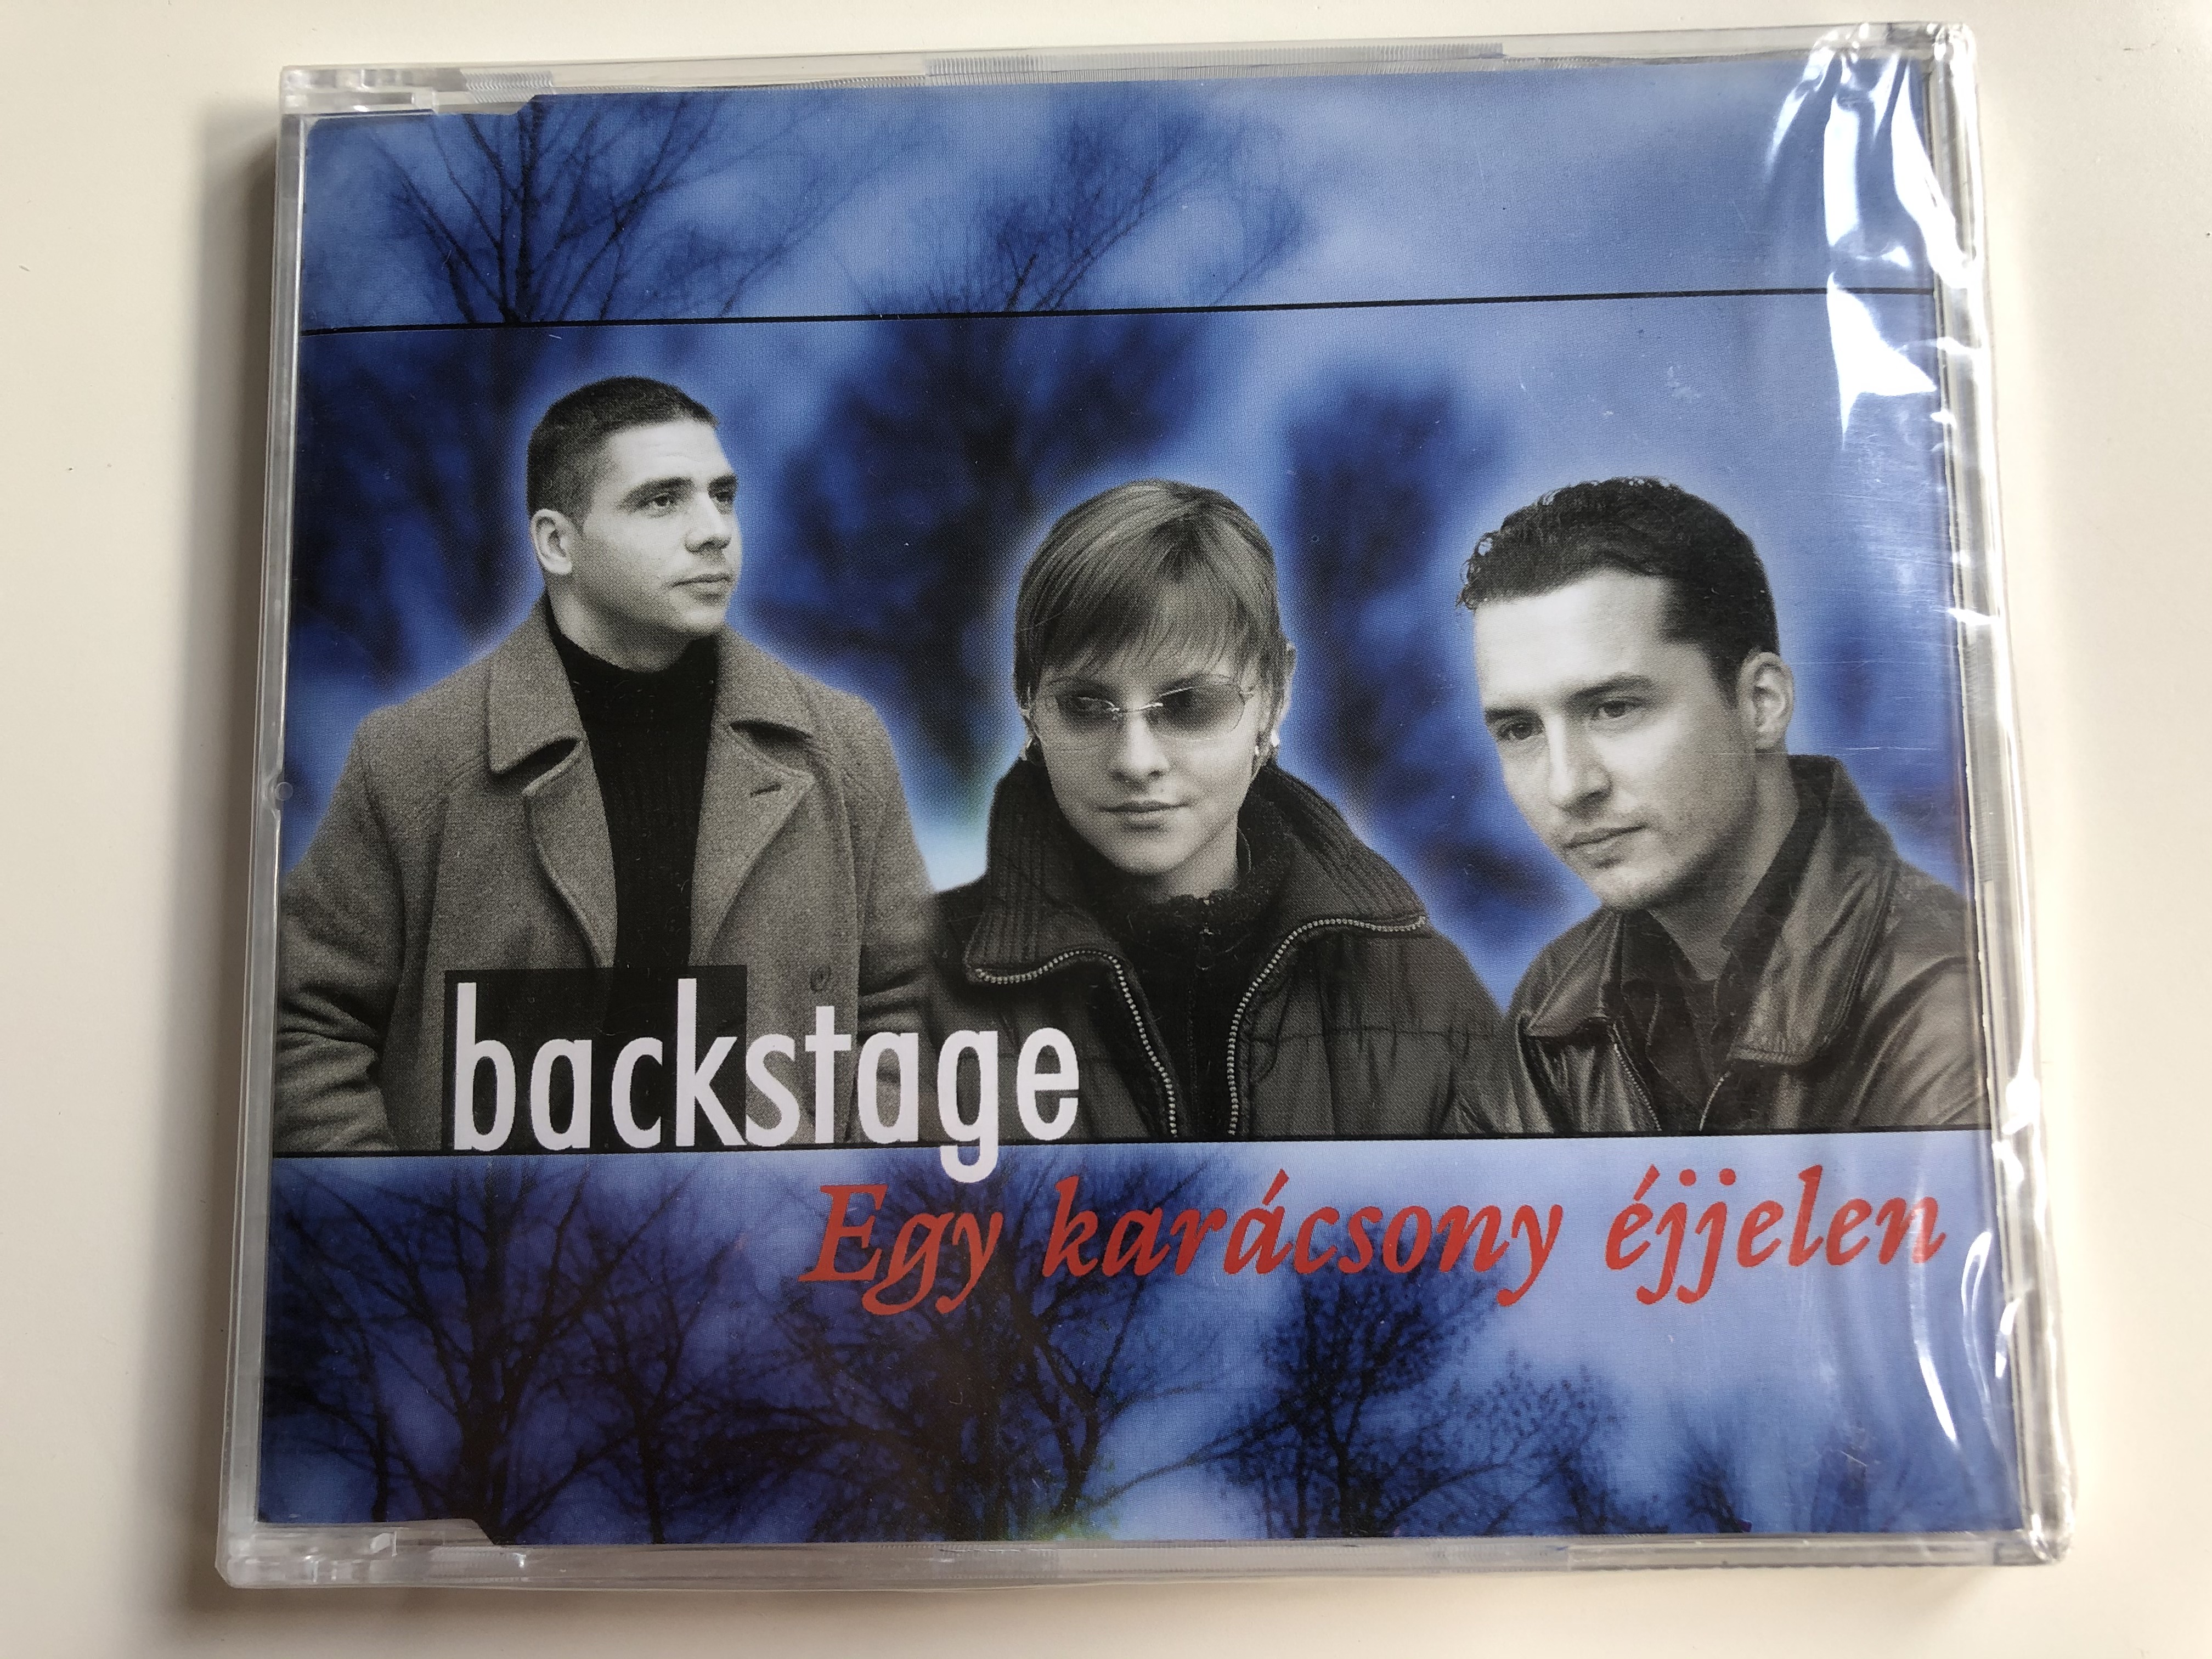 backstage-egy-karacsony-ejjelen-newtone-audio-cd-2002-d651822-1-.jpg